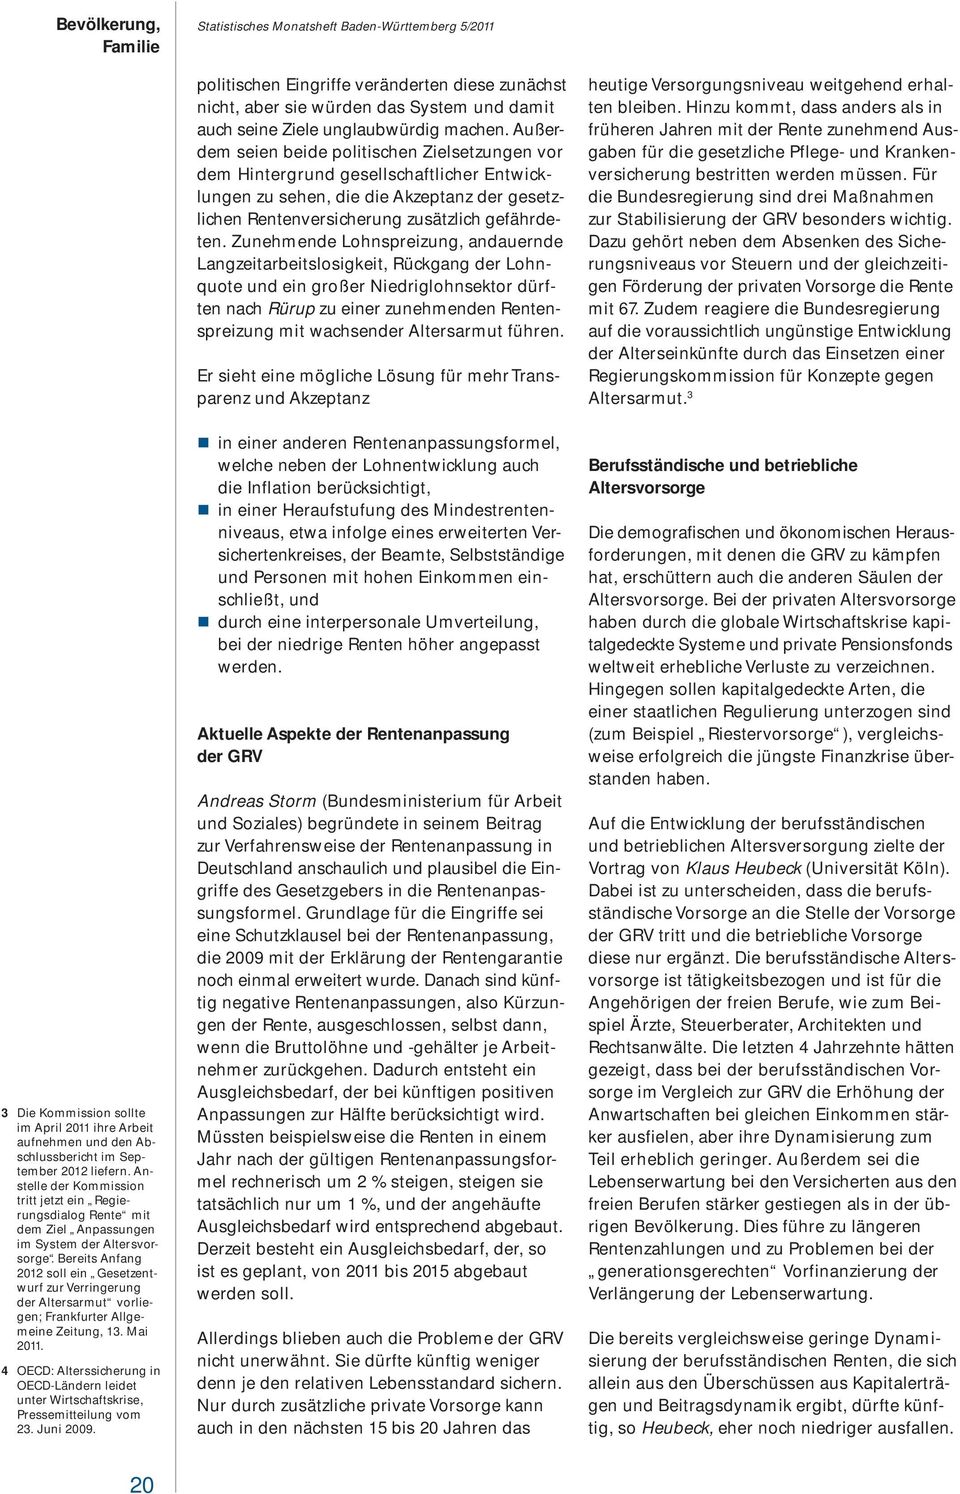 Bereits Anfang 2012 soll ein Gesetzentwurf zur Verringerung der Altersarmut vorliegen; Frankfurter Allgemeine Zeitung, 13. Mai 2011.